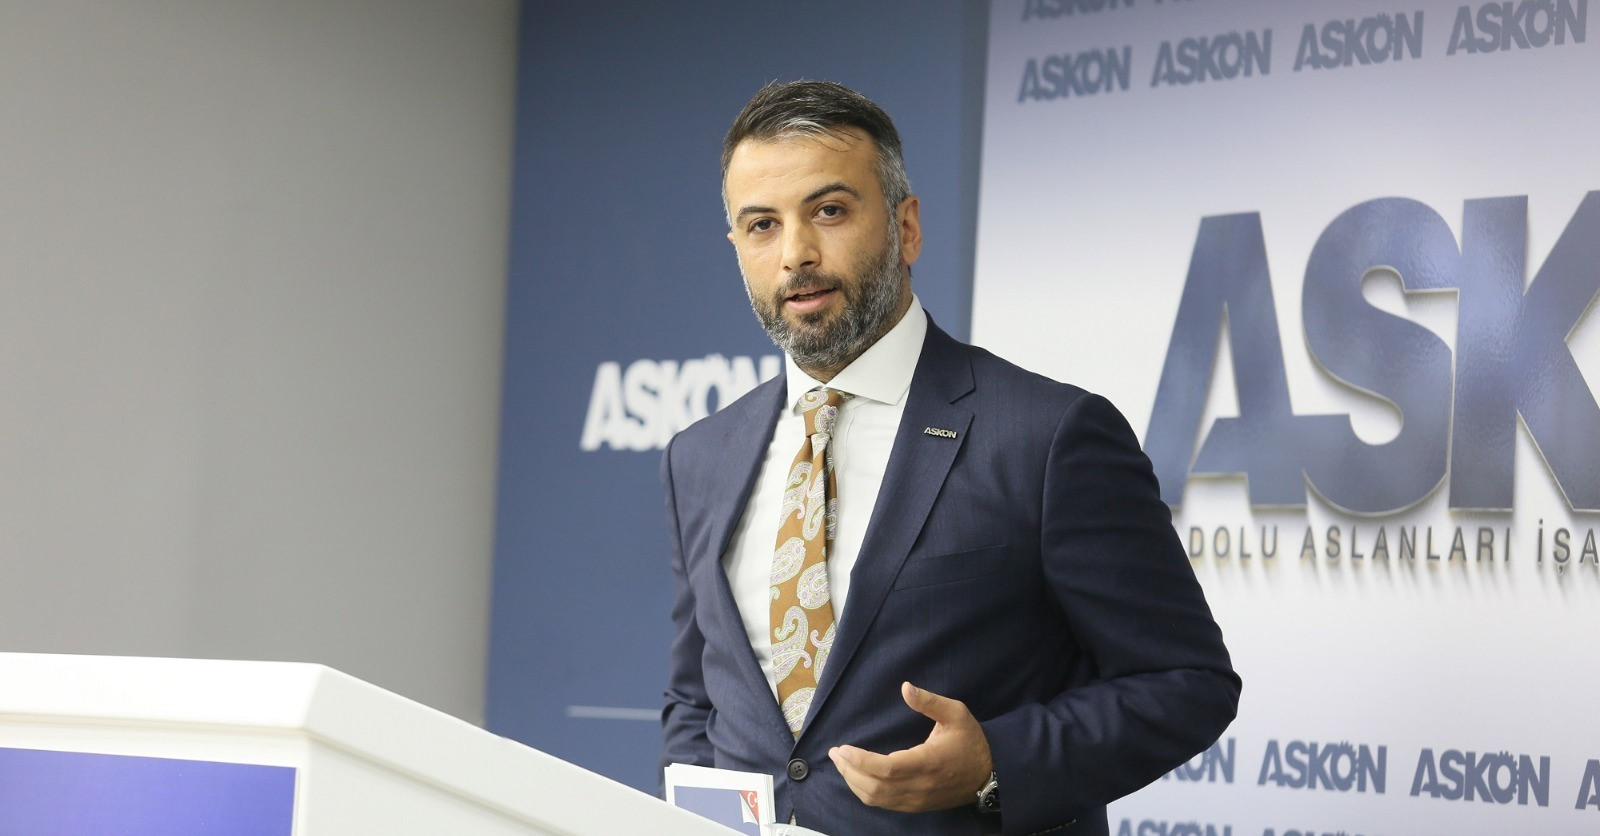 Anadolu Aslanları İşadamları Derneği (ASKON) Genel Başkanı Orhan Aydın